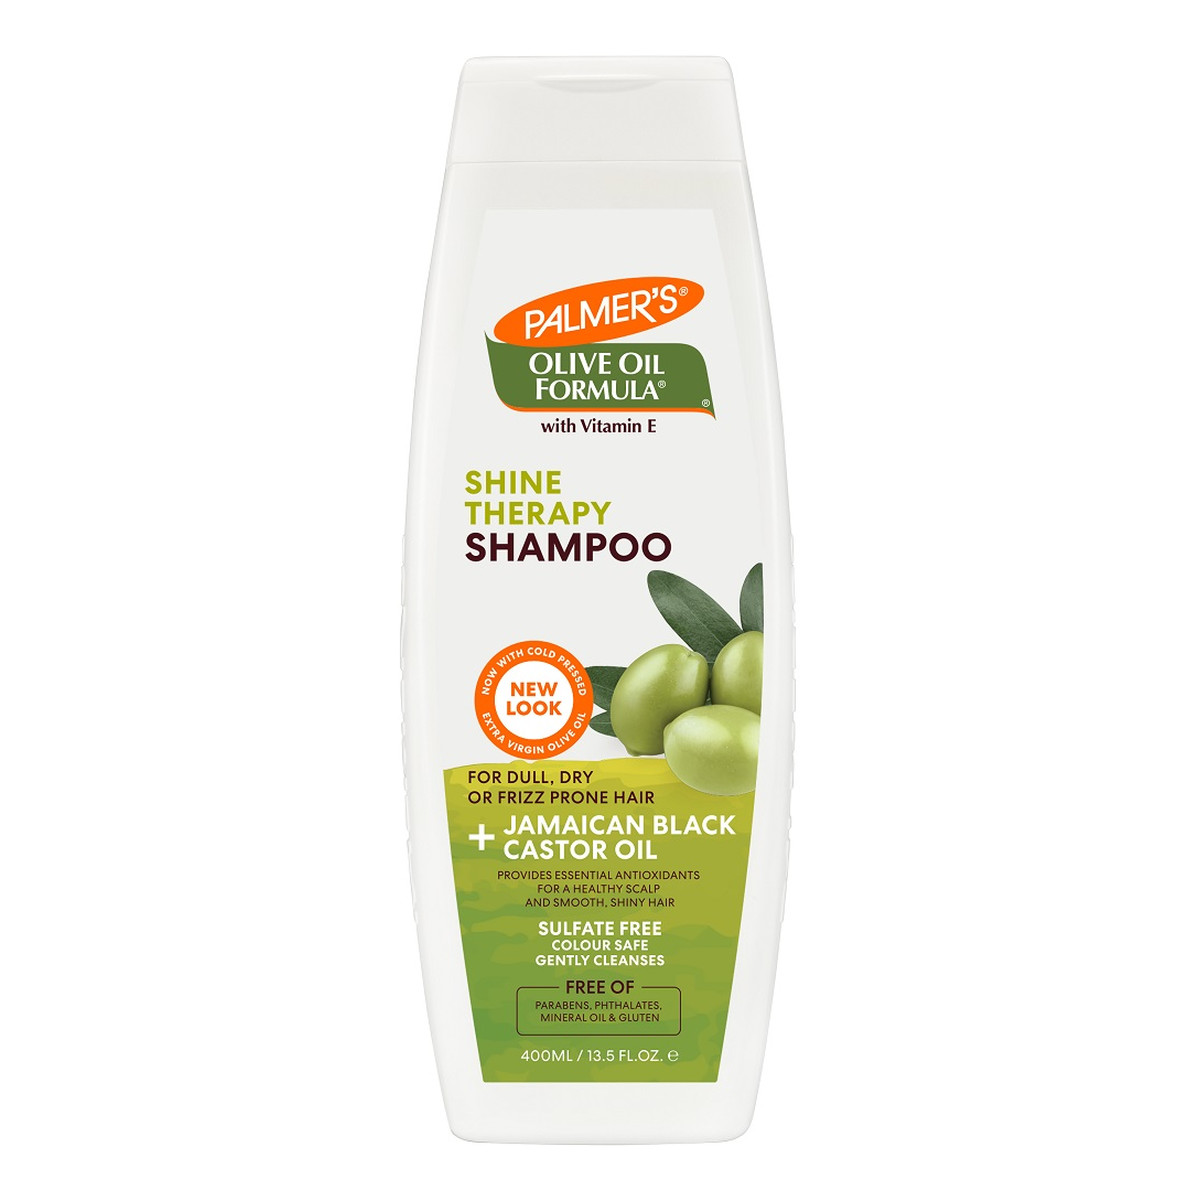 Palmer's Olive Oil Formula Smoothing Shampoo szampon odżywczo-wygładzający na bazie olejku z oliwek extra virgin 400ml